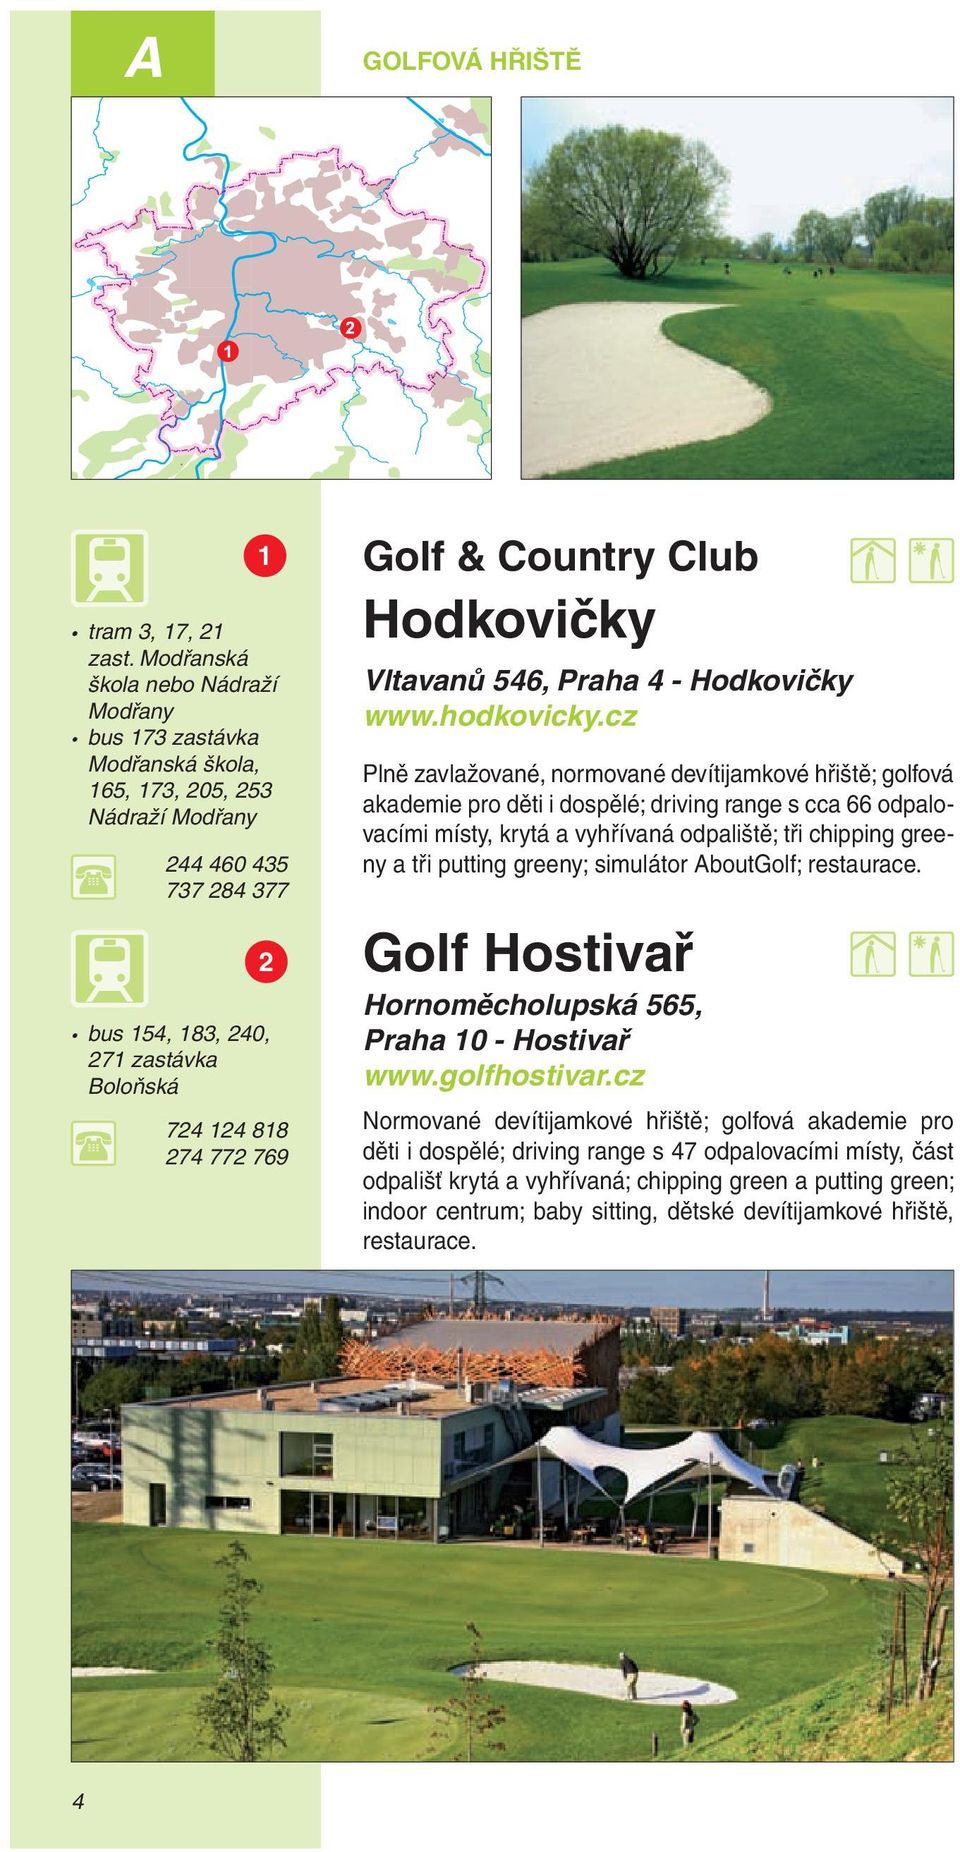 Golf & Country Club Hodkovičky Vltavanů 546, Praha 4 - Hodkovičky www.hodkovicky.